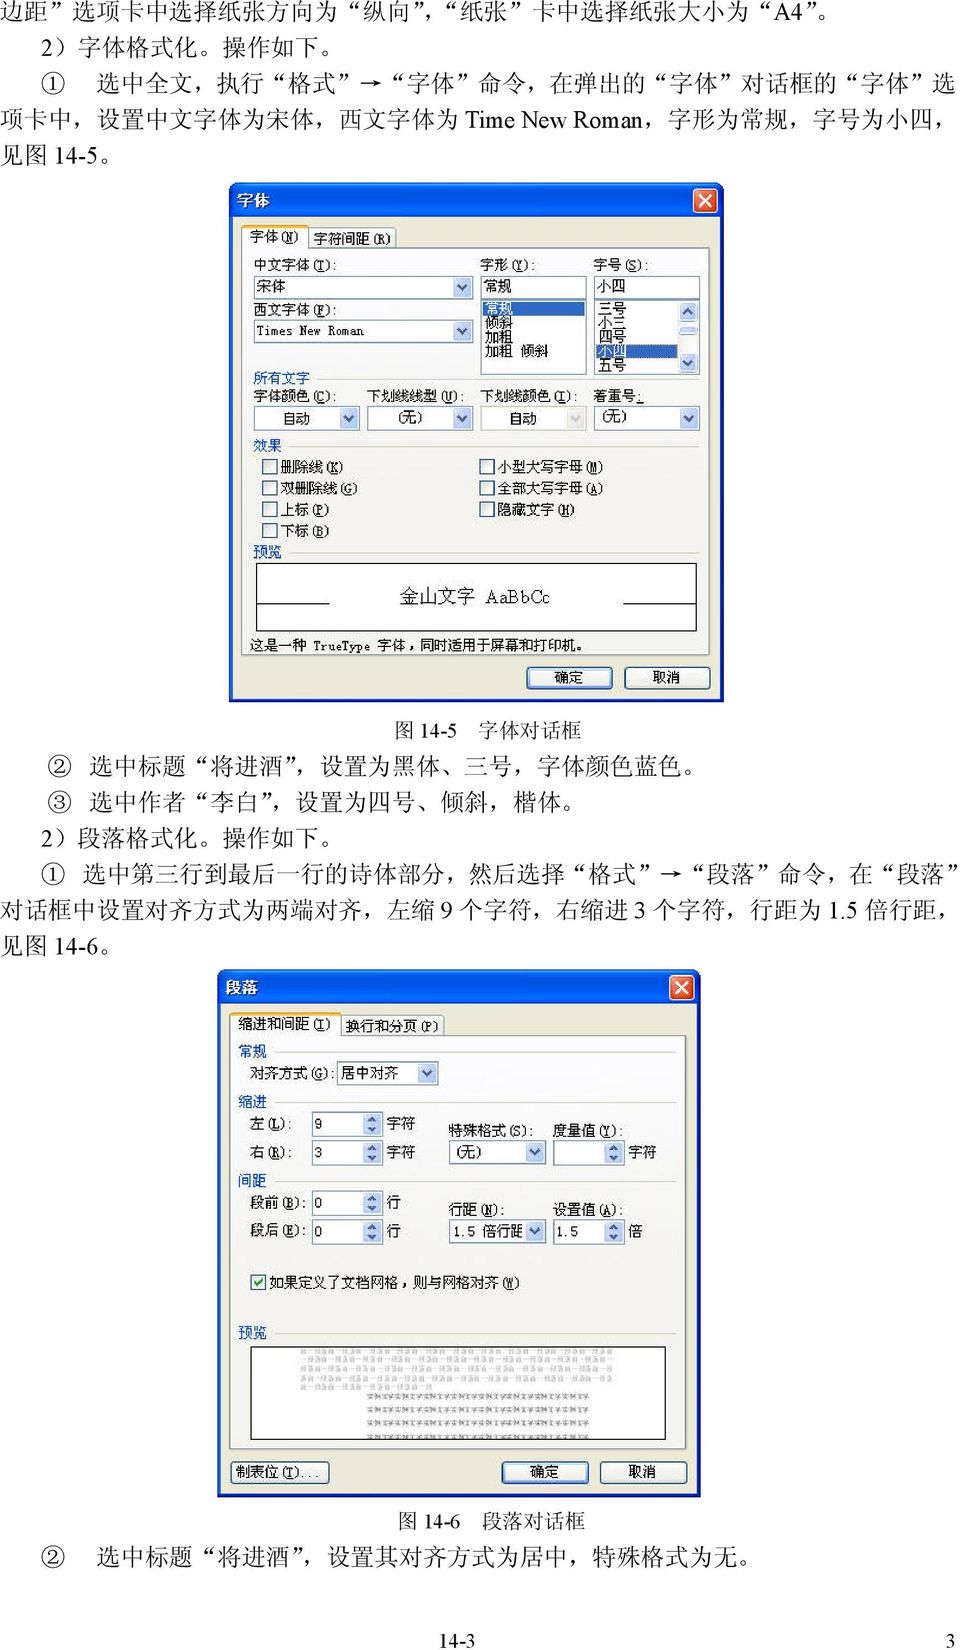 蓝 色 3 选 中 作 者 李 白, 设 置 为 四 号 倾 斜, 楷 体 2) 段 落 格 式 化 操 作 如 下 1 选 中 第 三 行 到 最 后 一 行 的 诗 体 部 分, 然 后 选 择 格 式 段 落 命 令, 在 段 落 对 话 框 中 设 置 对 齐 方